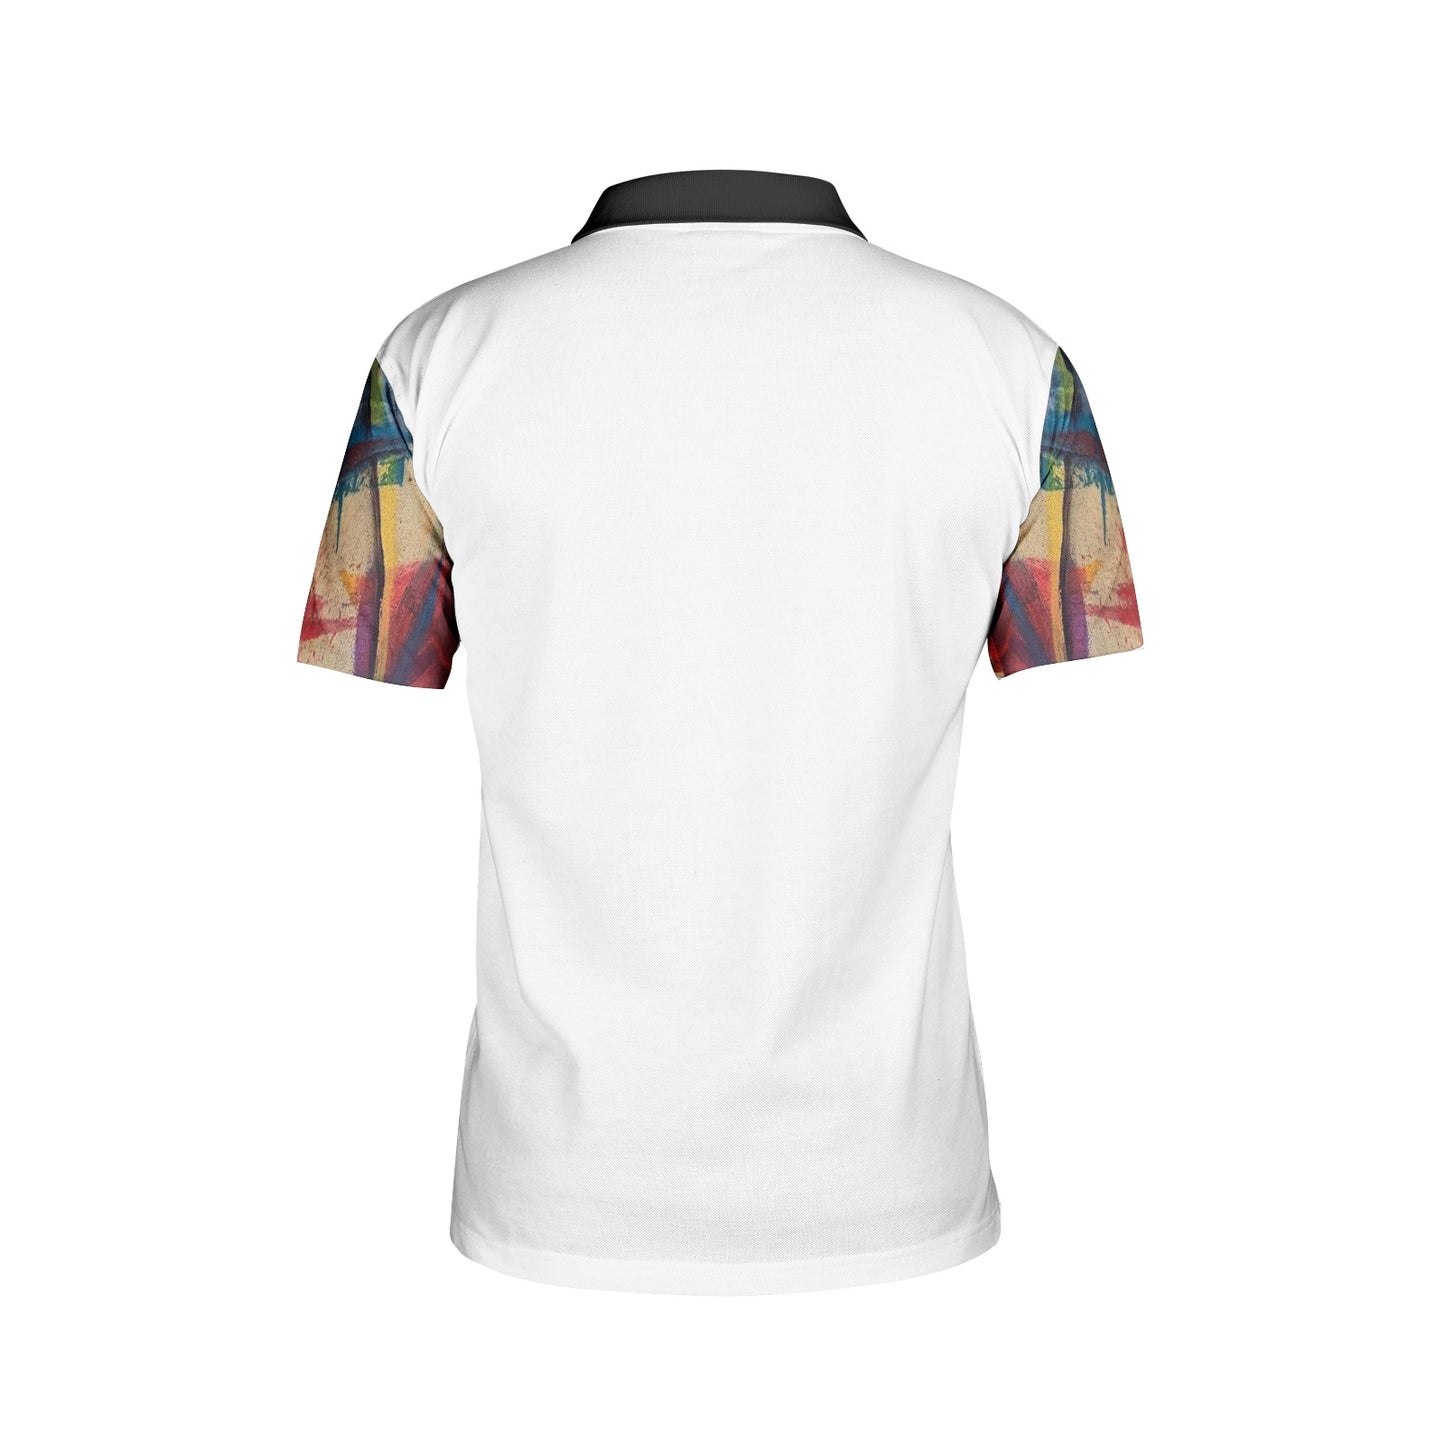 "Lapaix" collector's polo shirt